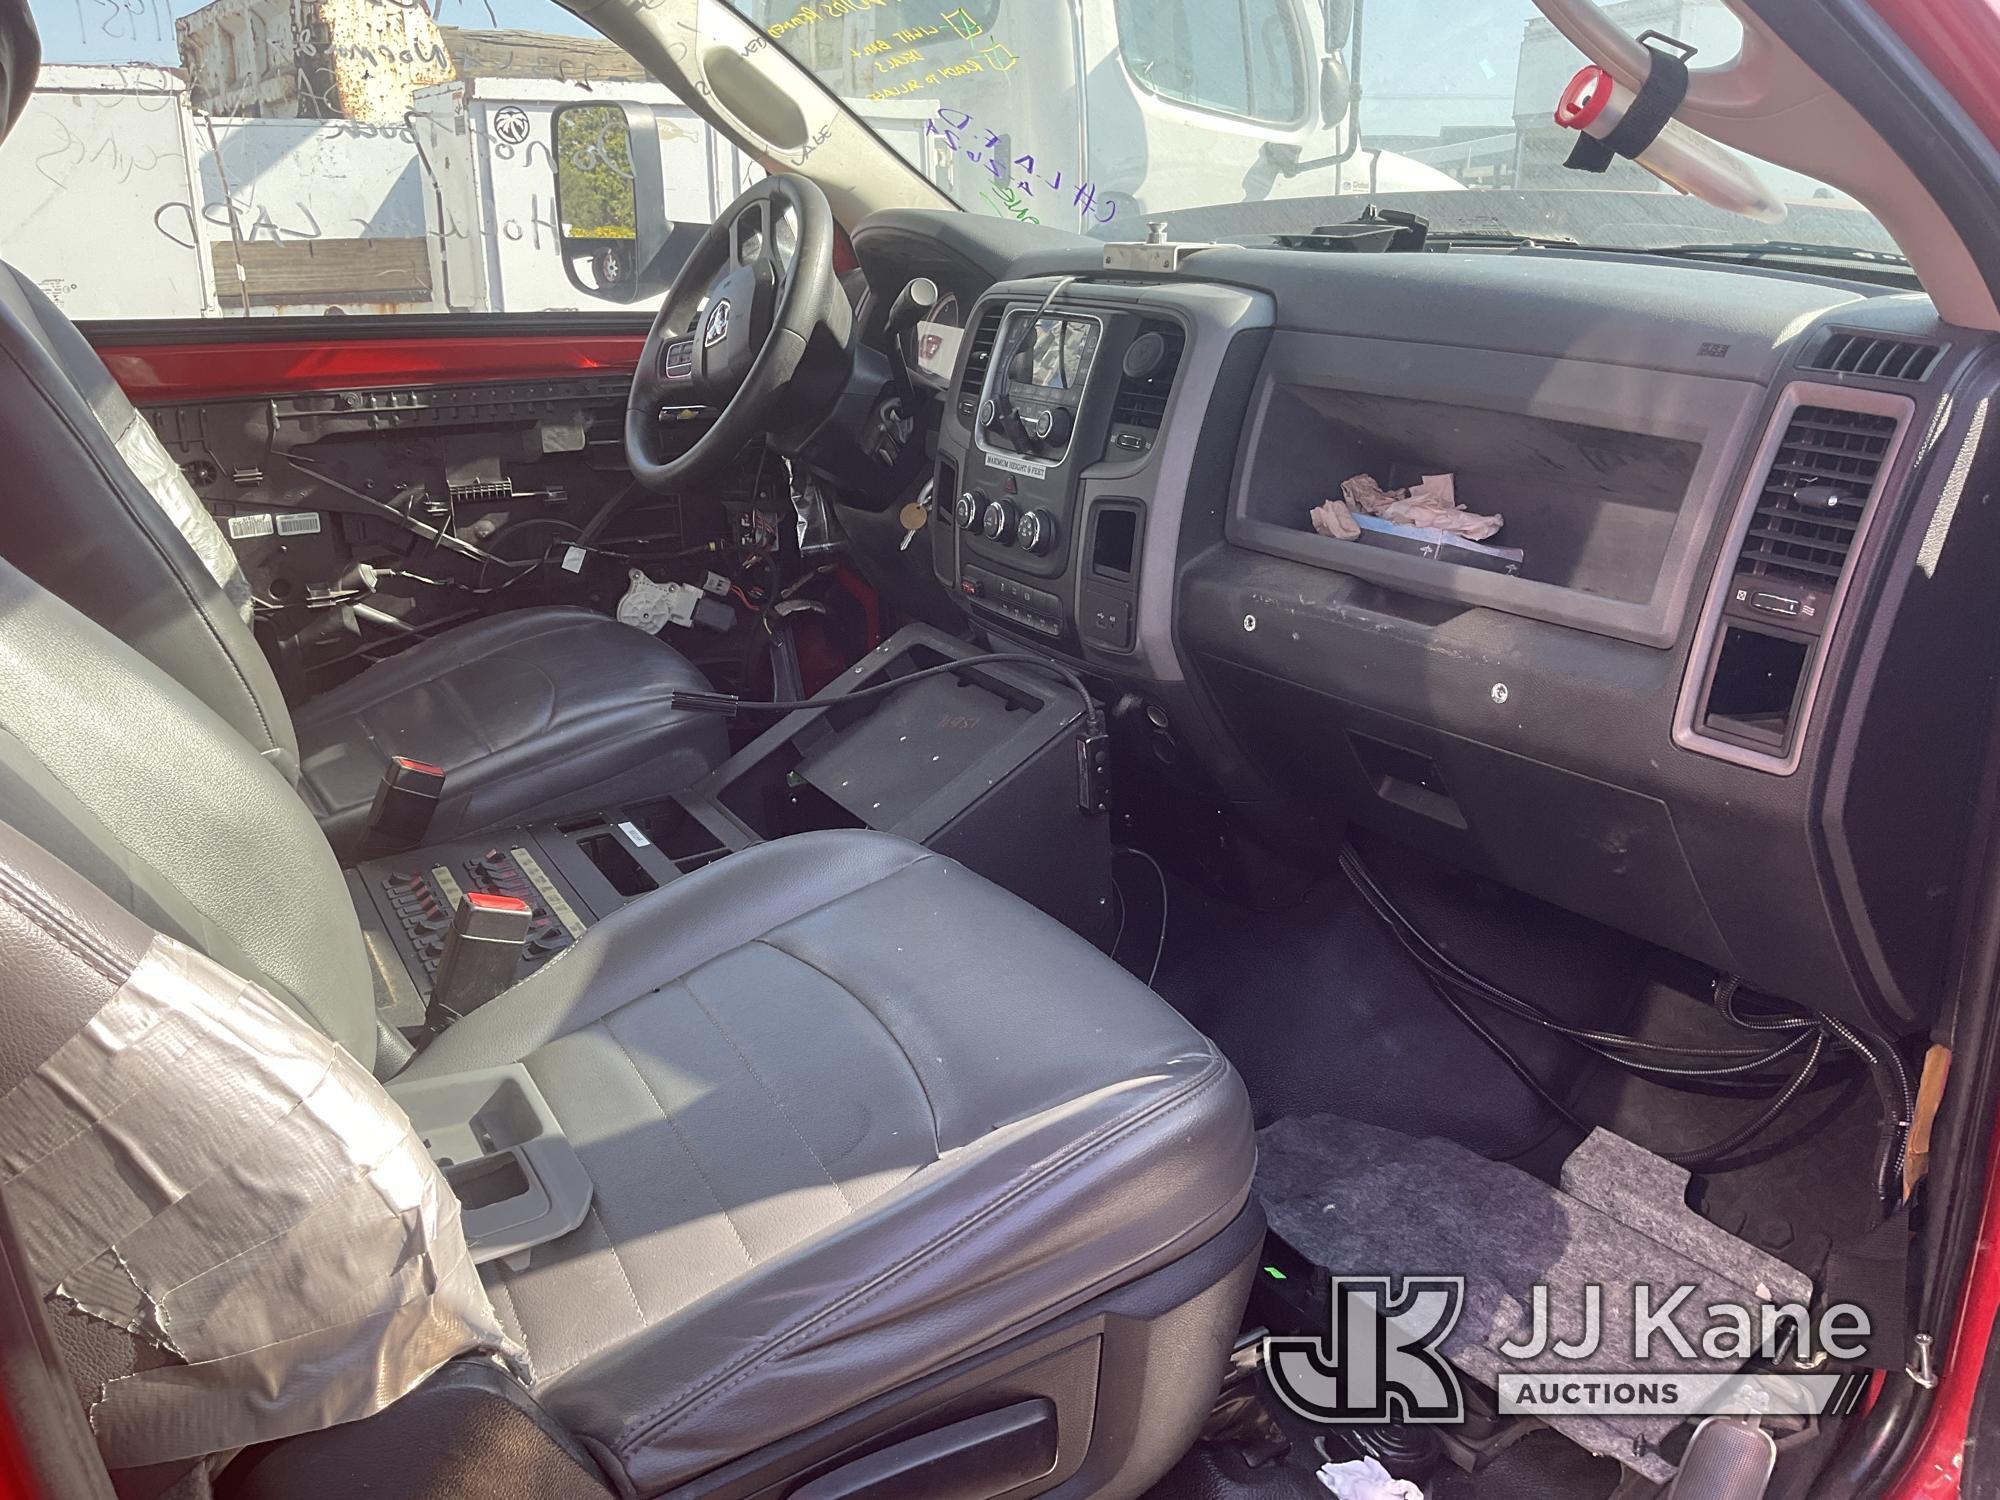 (Jurupa Valley, CA) 2014 RAM 4500 Cab & Chassis Not Running, Has Door Keys, Missing Key Fobs, Front